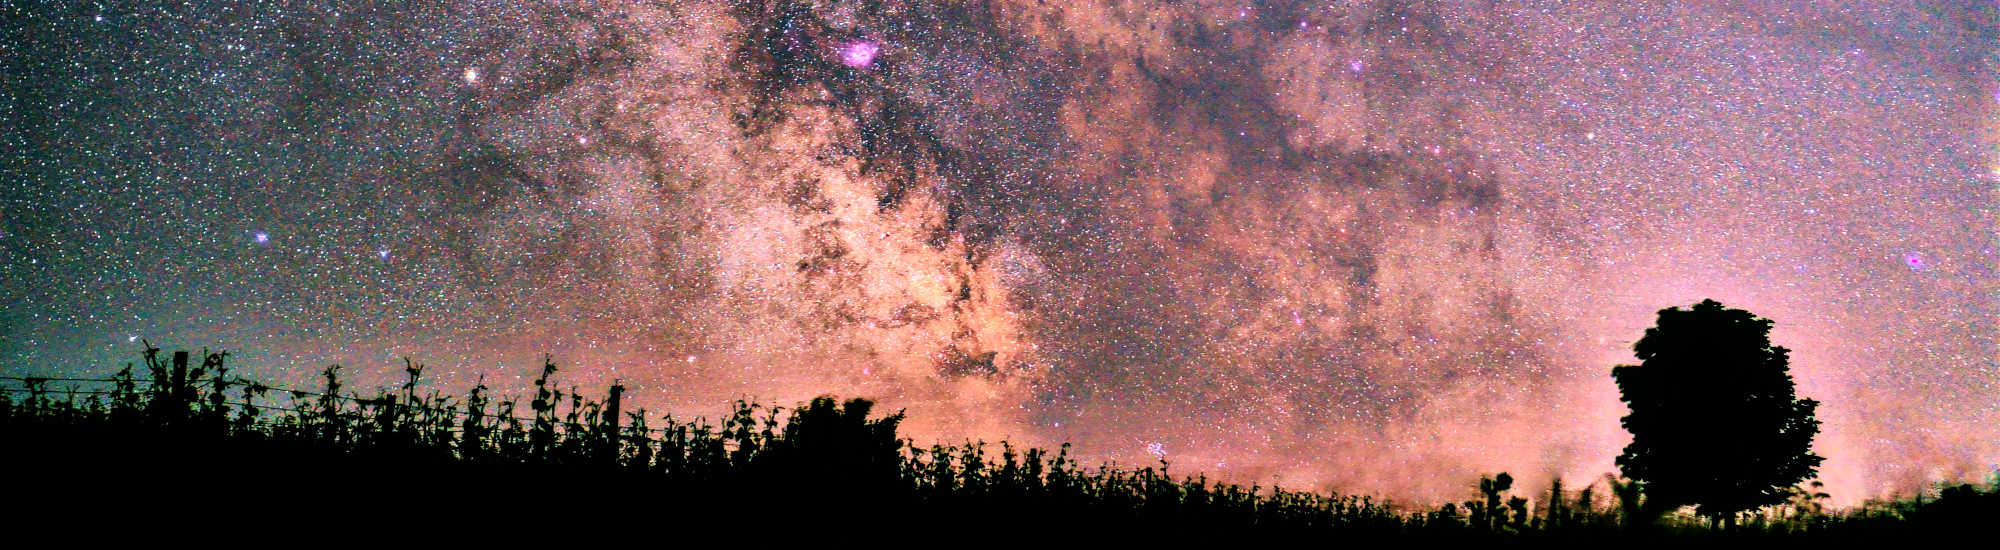 Galaktisches Zentrum der Milchstraße im Juni, aufgenommen im Nordschwarzwald